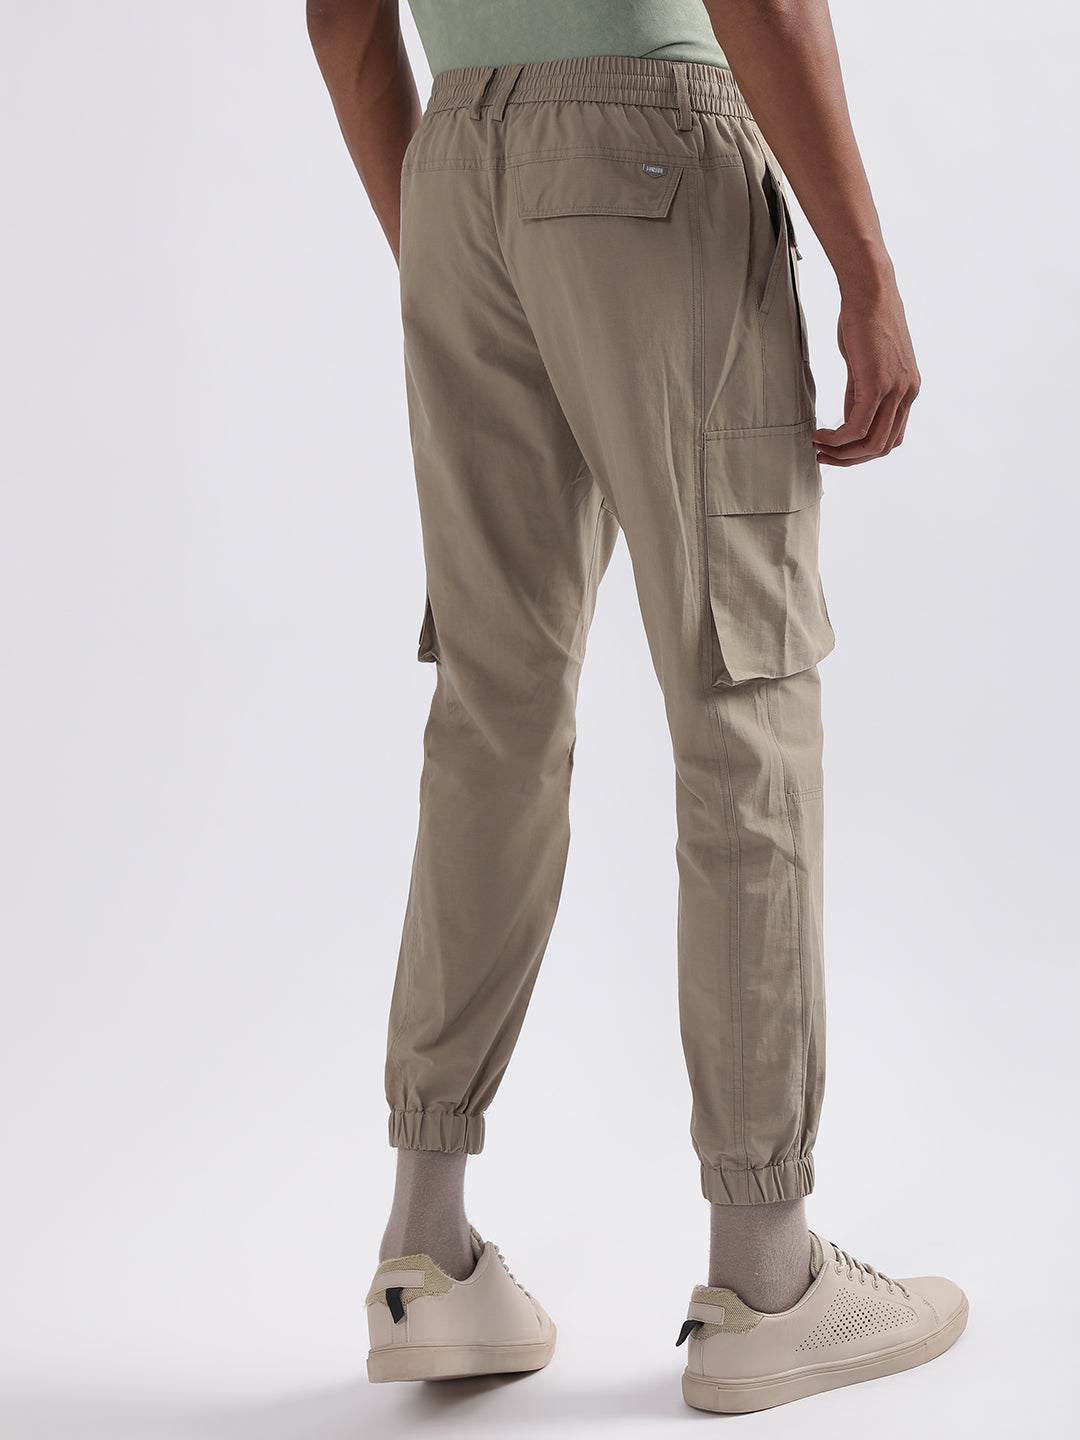 Buy Men's Beige Oversized Plus Size Cargo Pants Online at Bewakoof